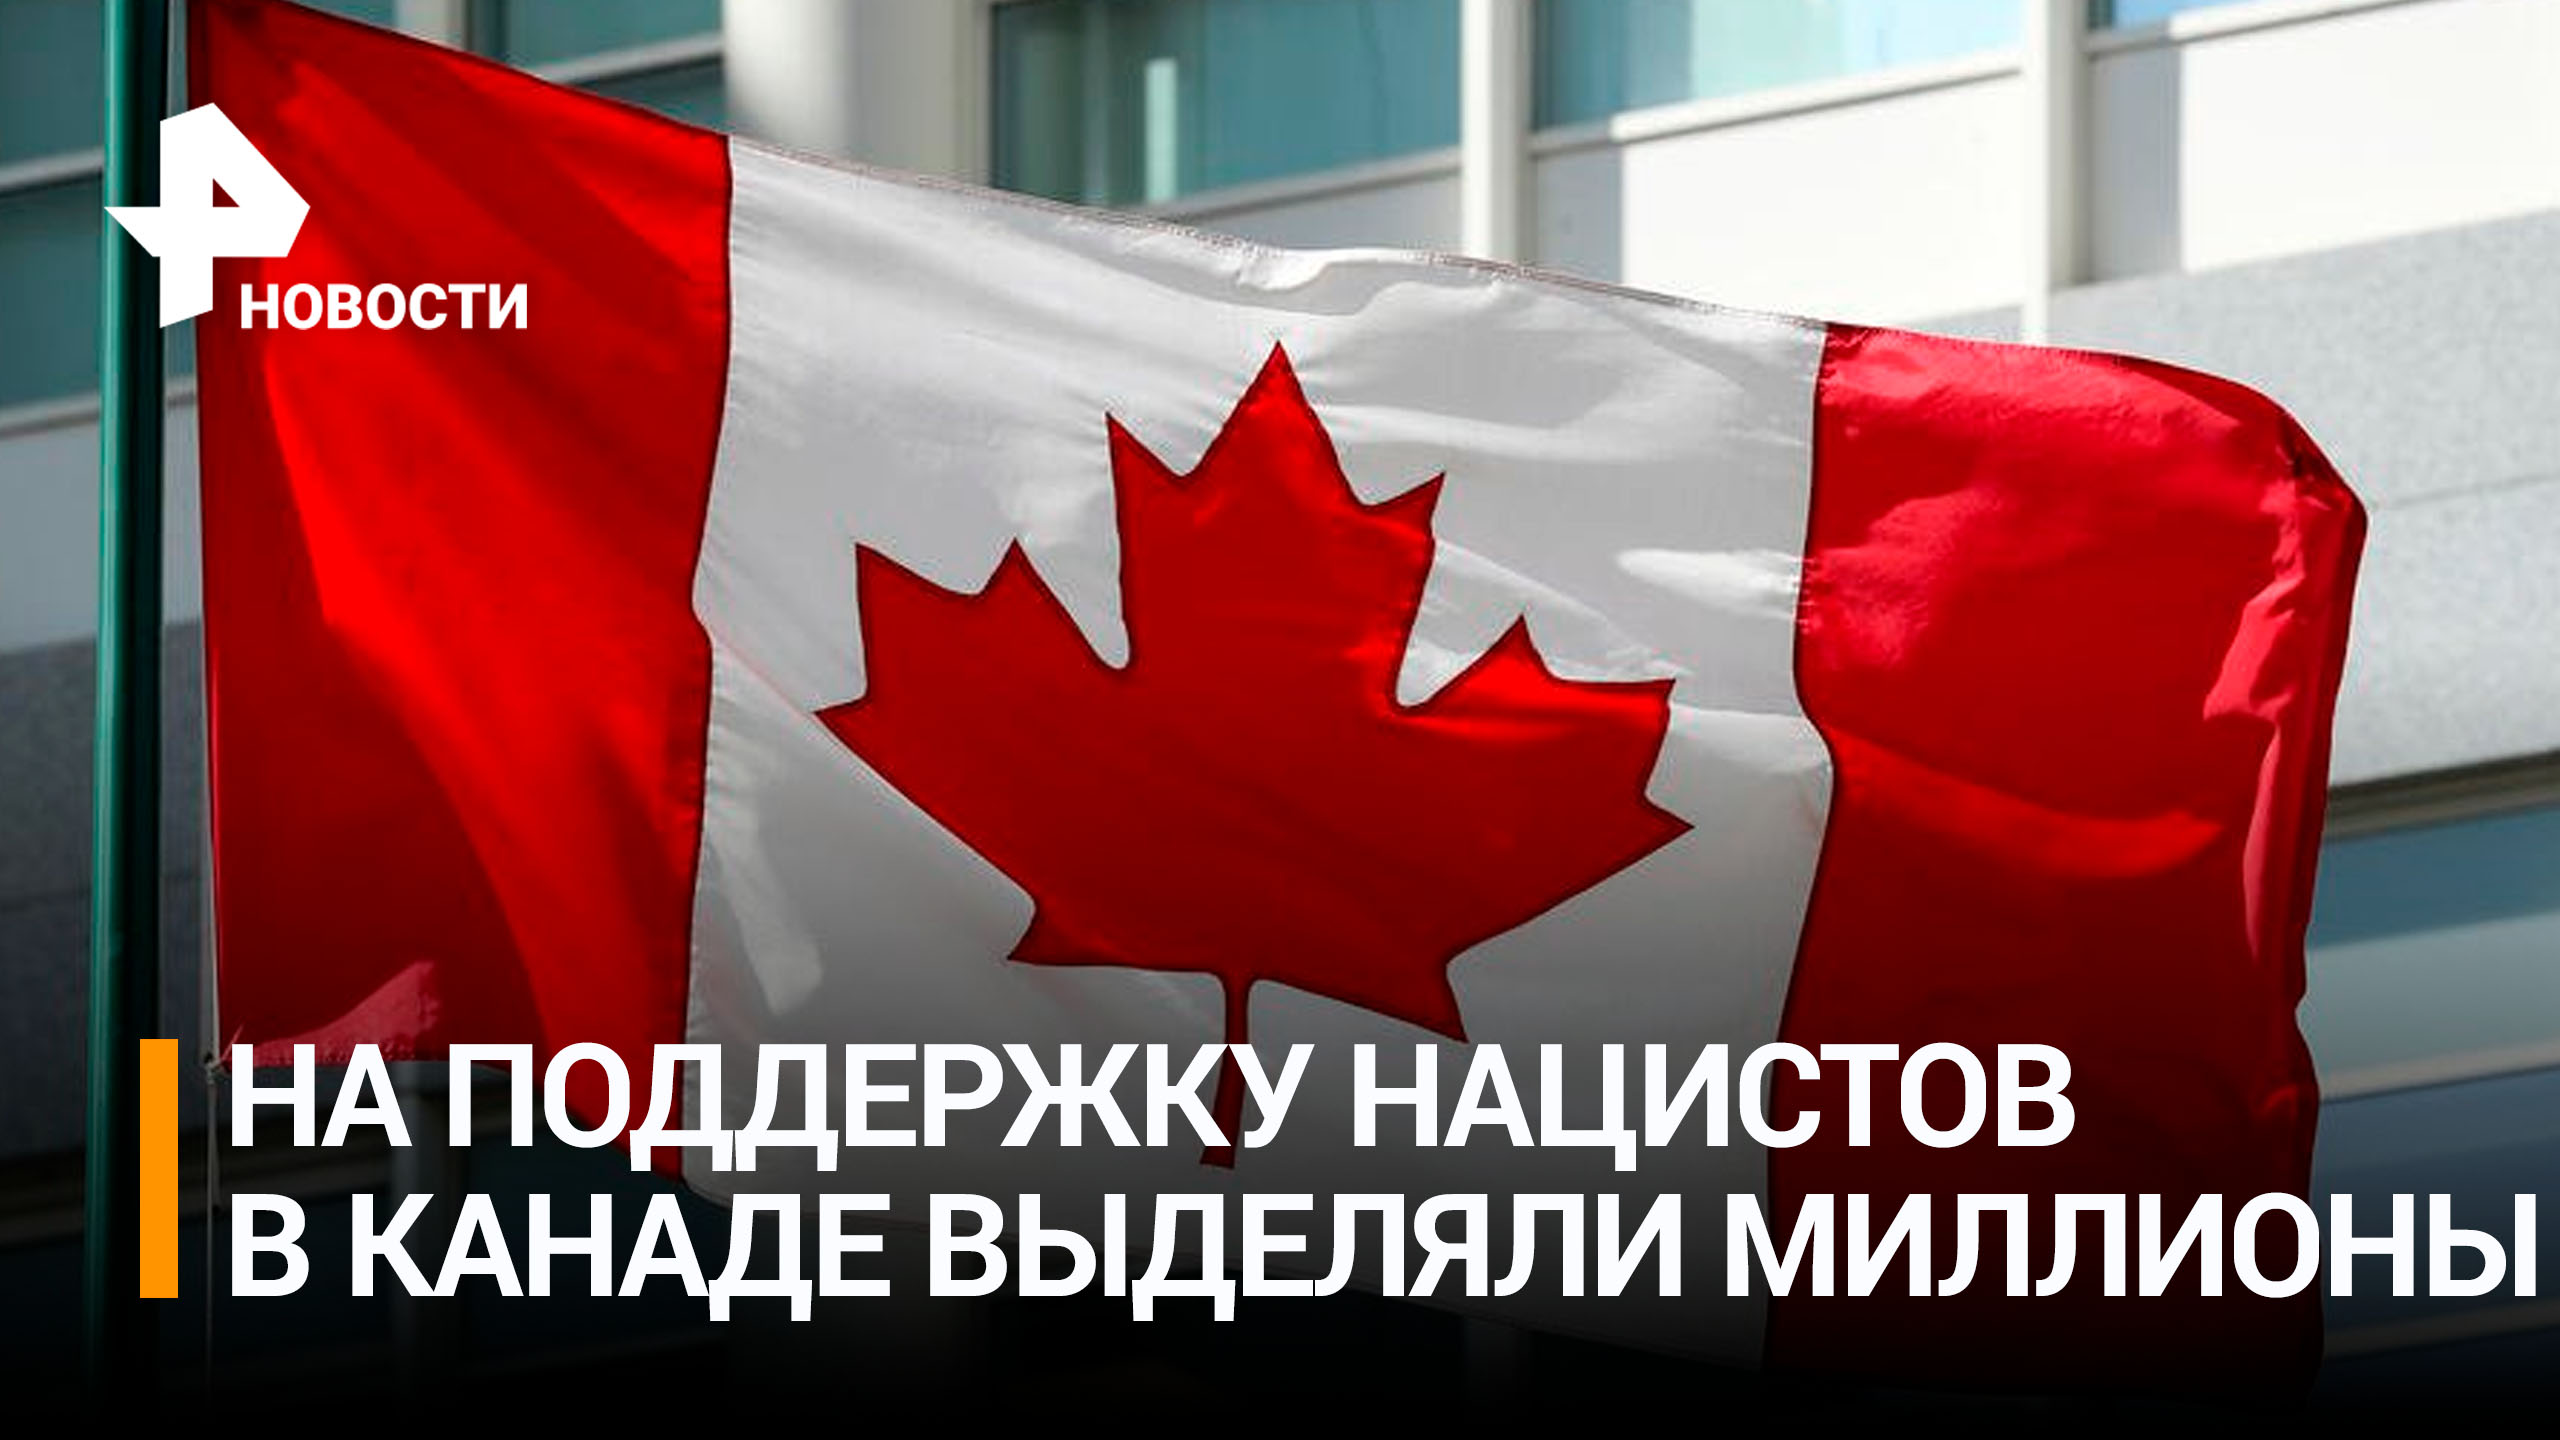 Канада выделила $2,2 млн связанным с украинскими нацистами организациям / РЕН Новости